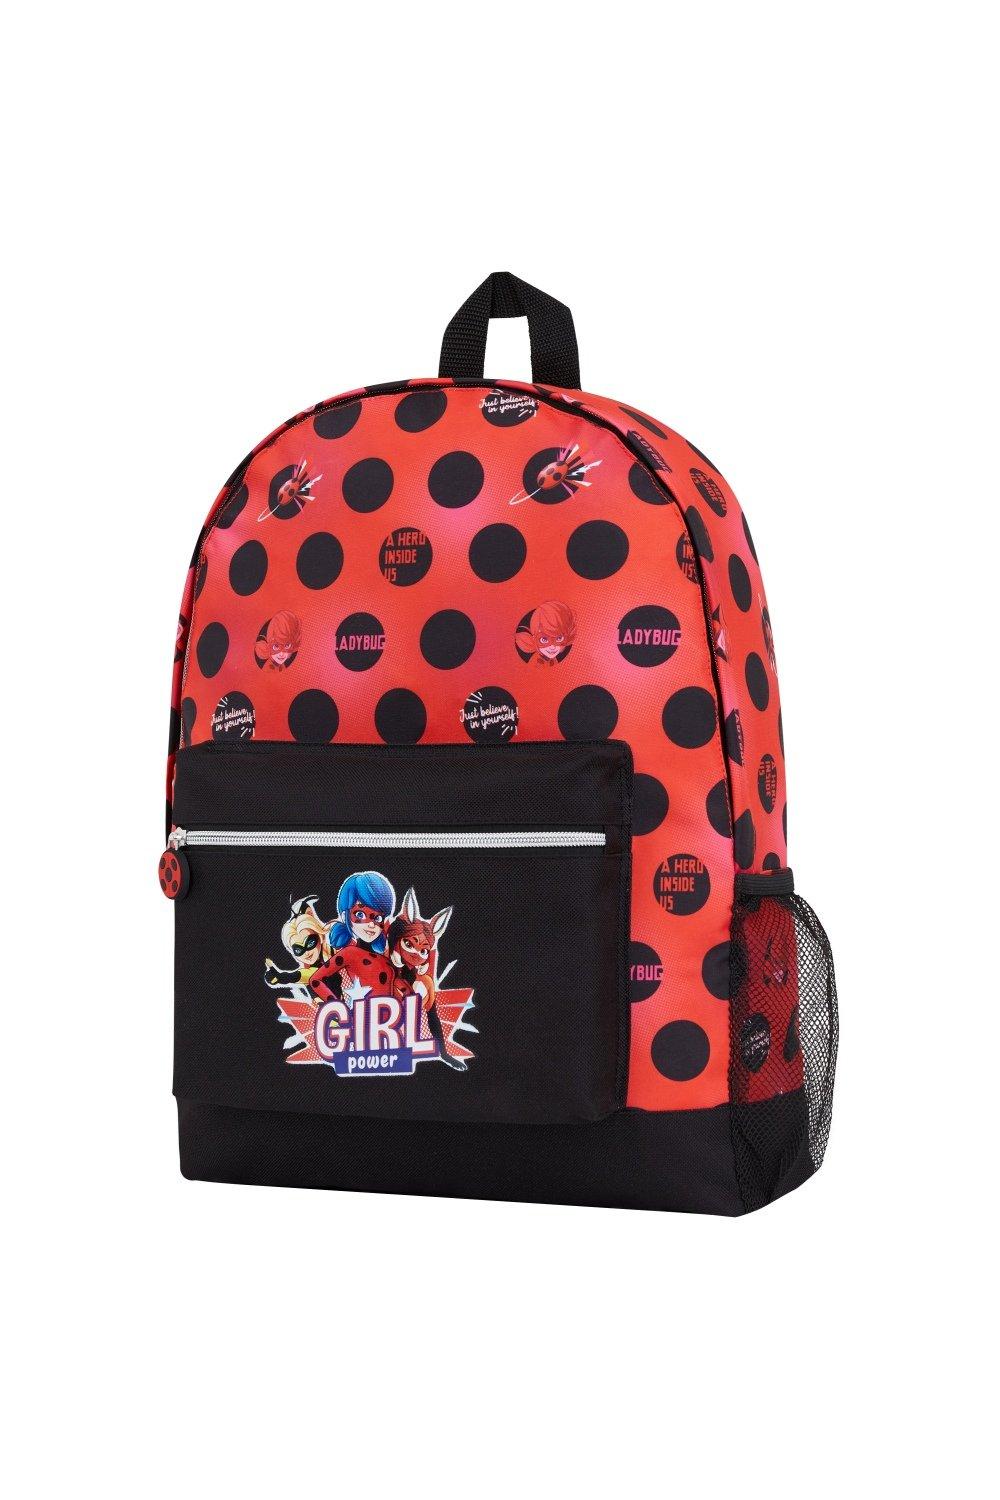 Рюкзак с божьей коровкой Miraculous Ladybug, мультиколор австралийский оригинальный школьный рюкзак smiggle детский рюкзак на плечо милый черный радужный детский рюкзак для девочек 16 дюймов